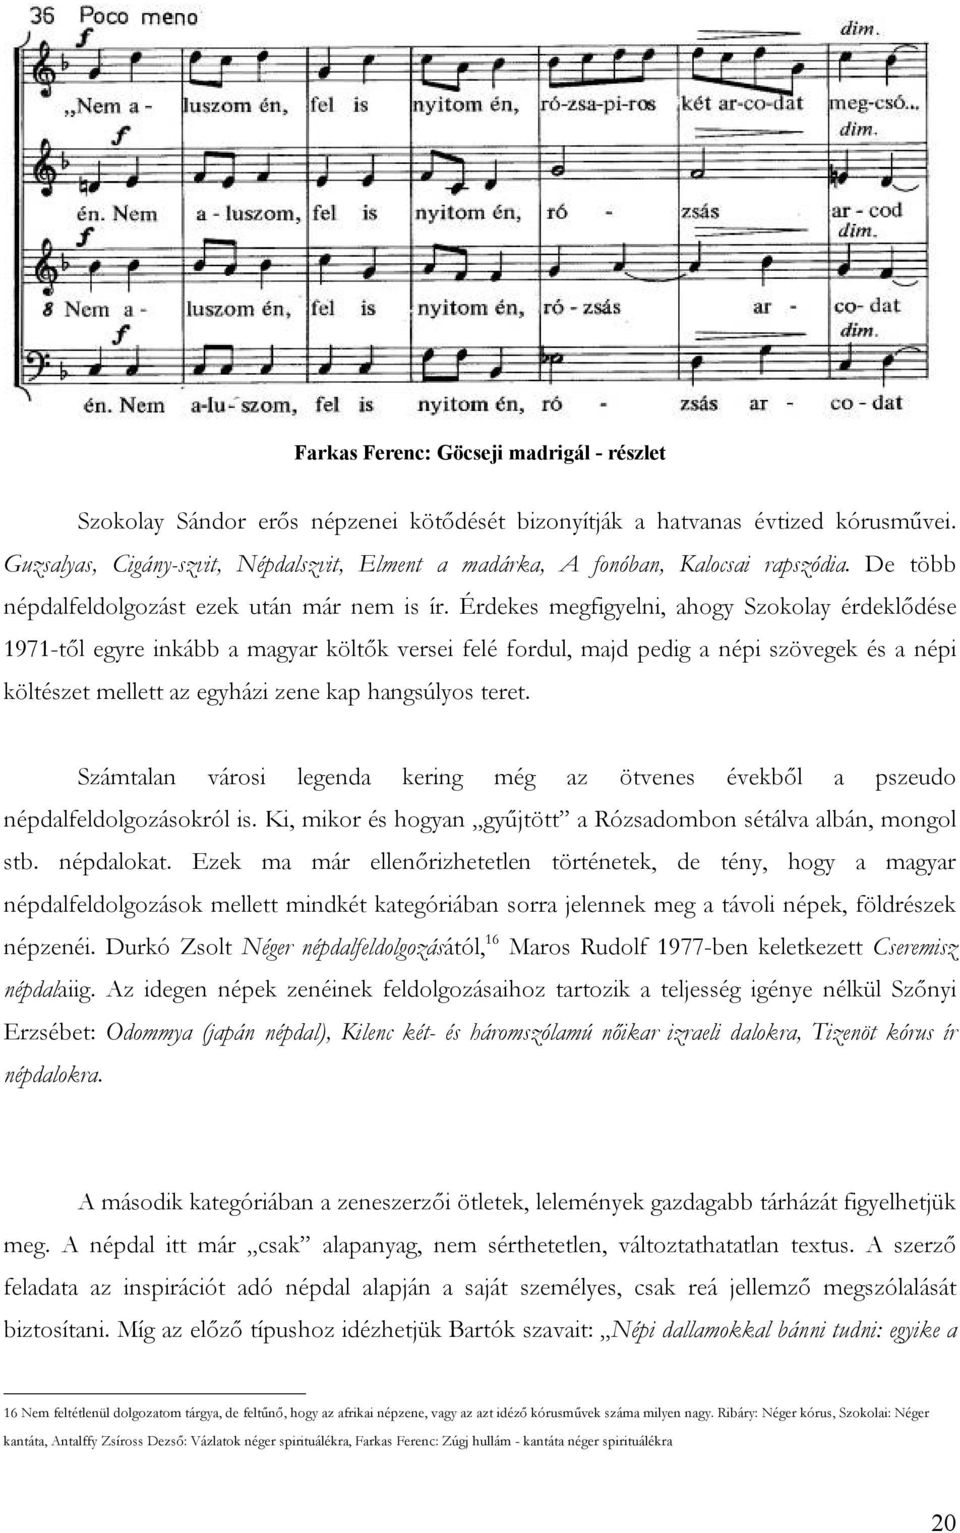 Érdekes megfigyelni, ahogy Szokolay érdeklődése 1971-től egyre inkább a magyar költők versei felé fordul, majd pedig a népi szövegek és a népi költészet mellett az egyházi zene kap hangsúlyos teret.